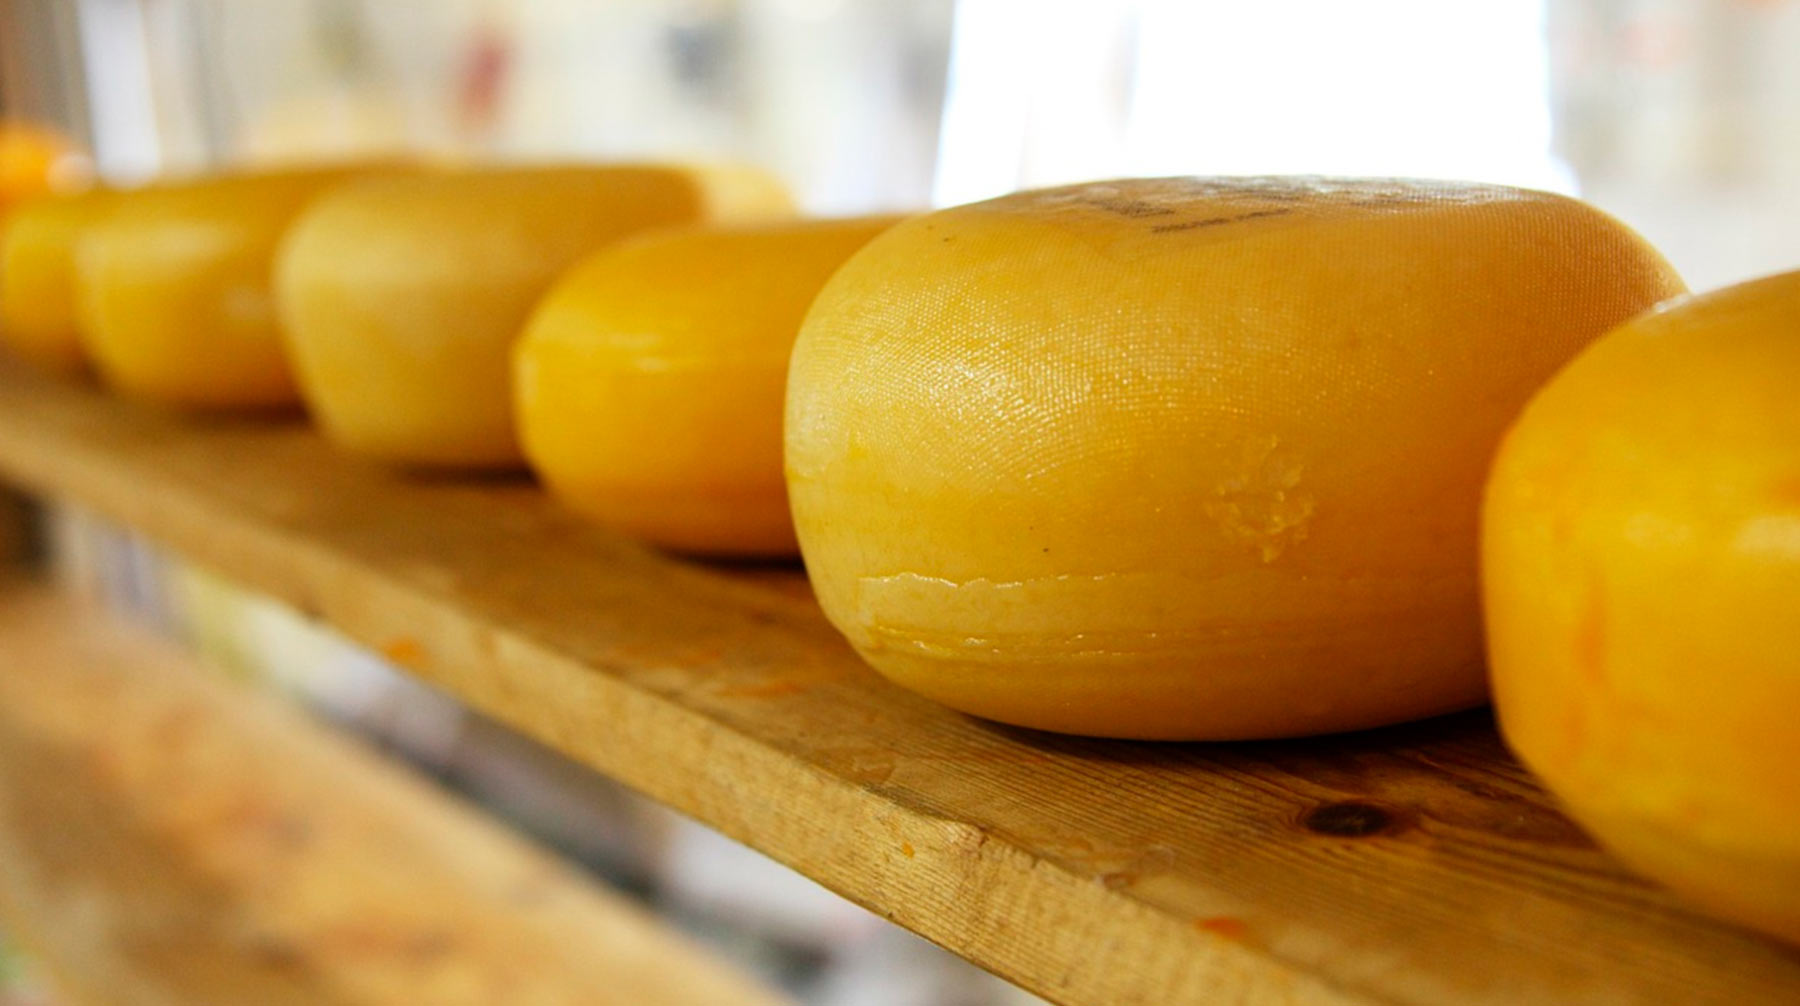 Для высококачественного сыра годится далеко не всякое молоко, отметили эксперты Фото: © pixabay.com